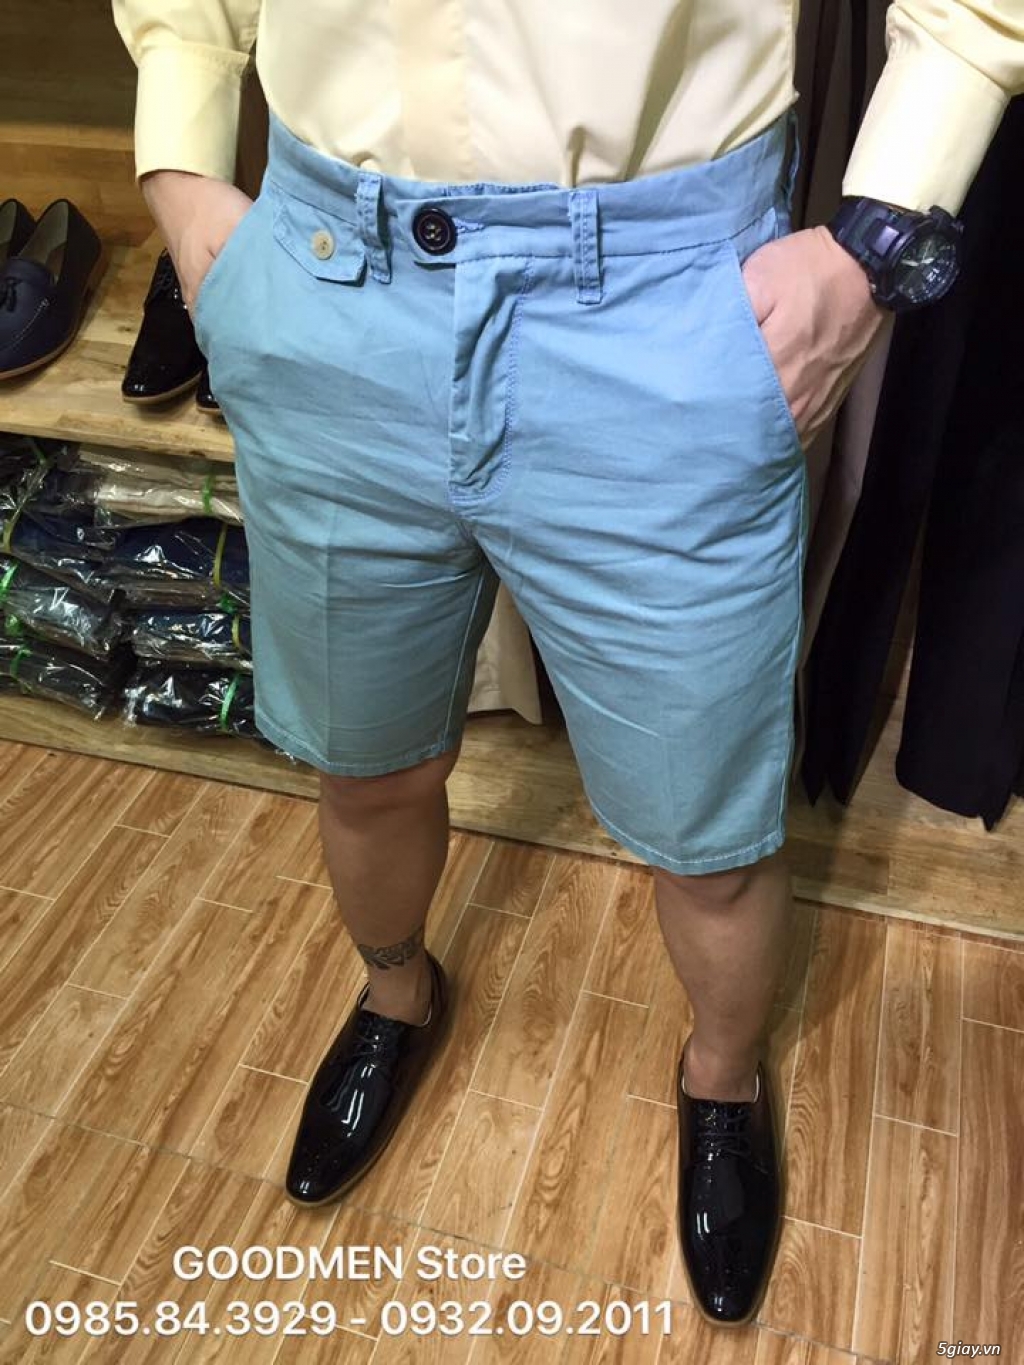 GoodMen Store chuyên sỉ lẻ quần tây âu, áo sơ mi , quần short kaki nam - 23